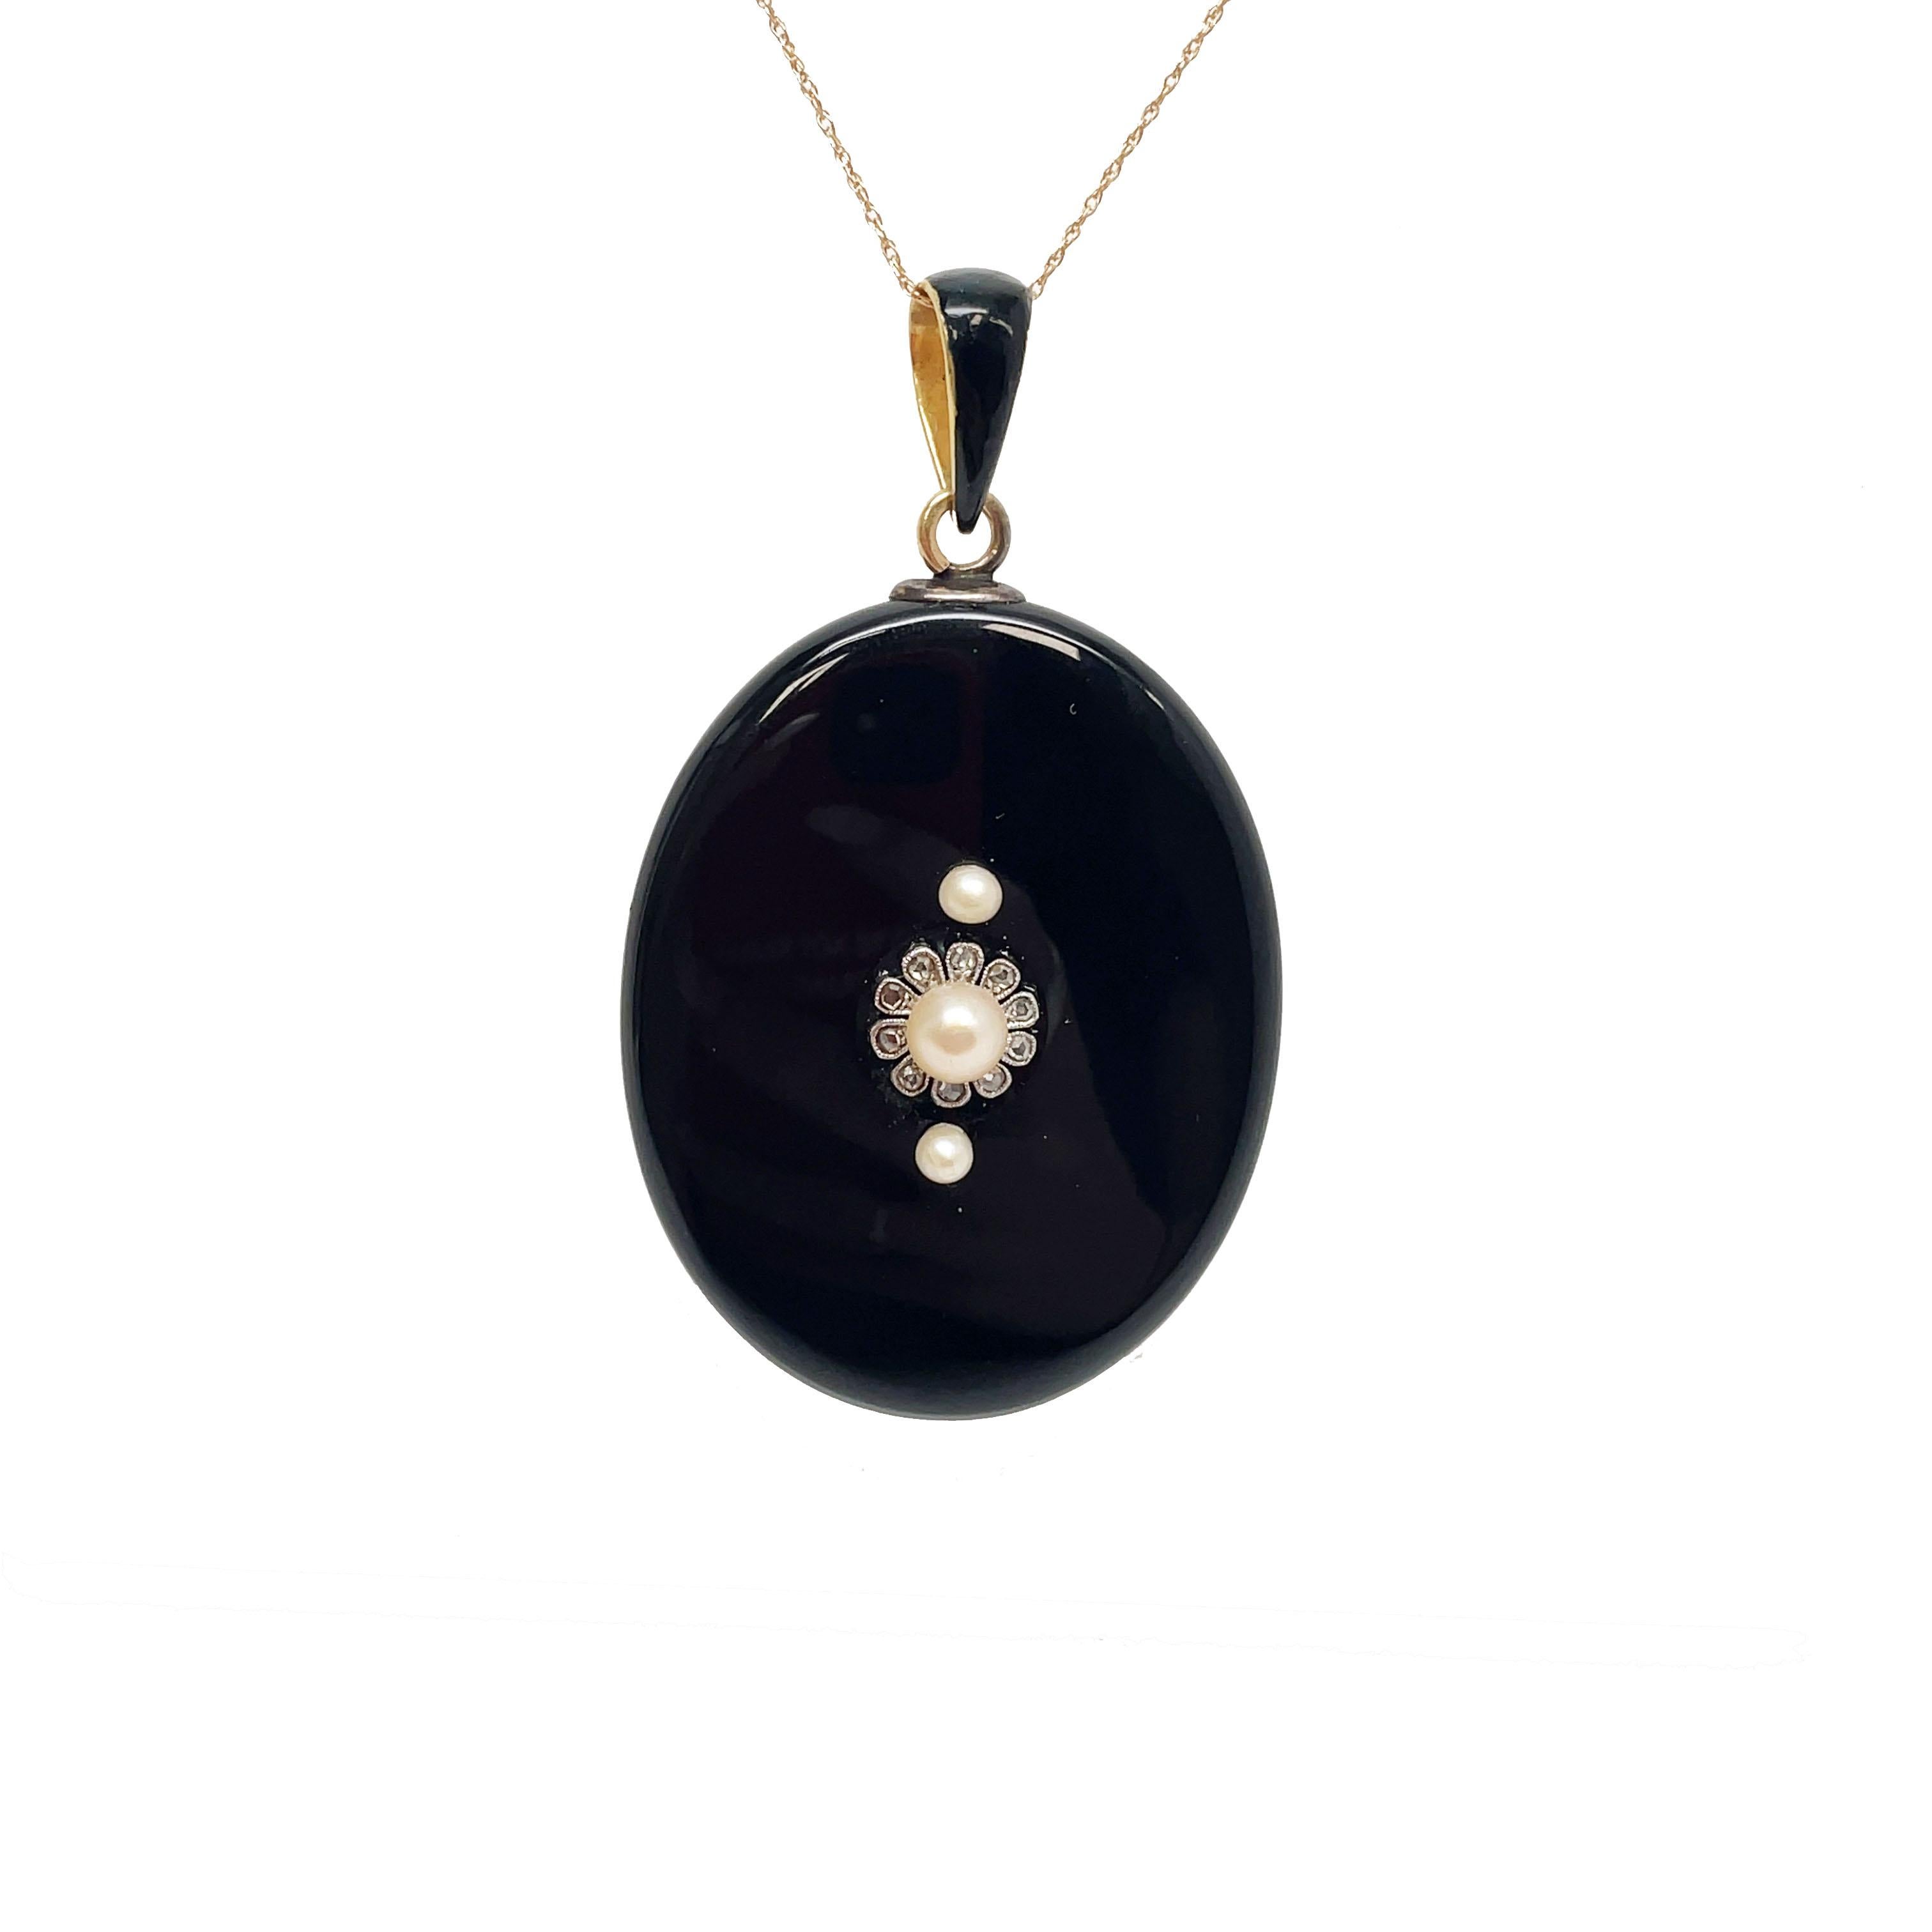 Voici un spectaculaire médaillon victorien de 1890 en onyx noir, diamant et perle ! Ce médaillon est orné de 10 jolis diamants taillés en rose qui entourent l'une des perles en formant un joli motif en forme de pétale. Le médaillon est composé